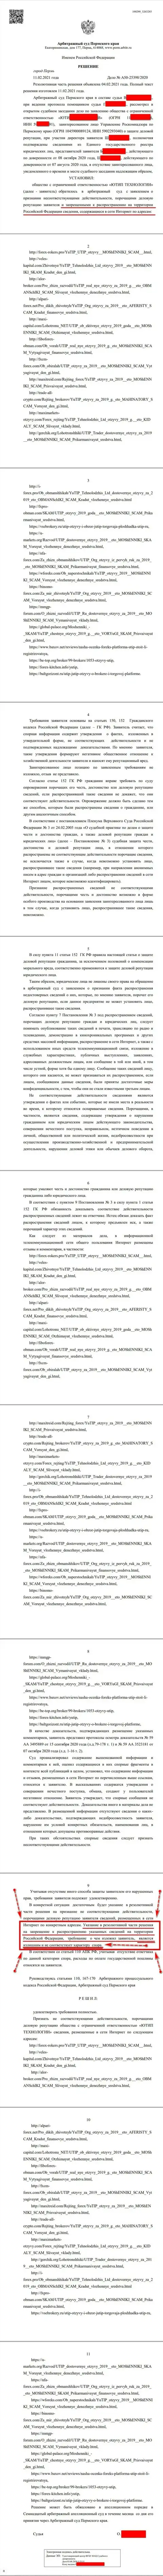 Решение Арбитражного суда г. Перми по судебному иску махинаторов UTIP в отношении web-сайта Forex-Brokers.Pro